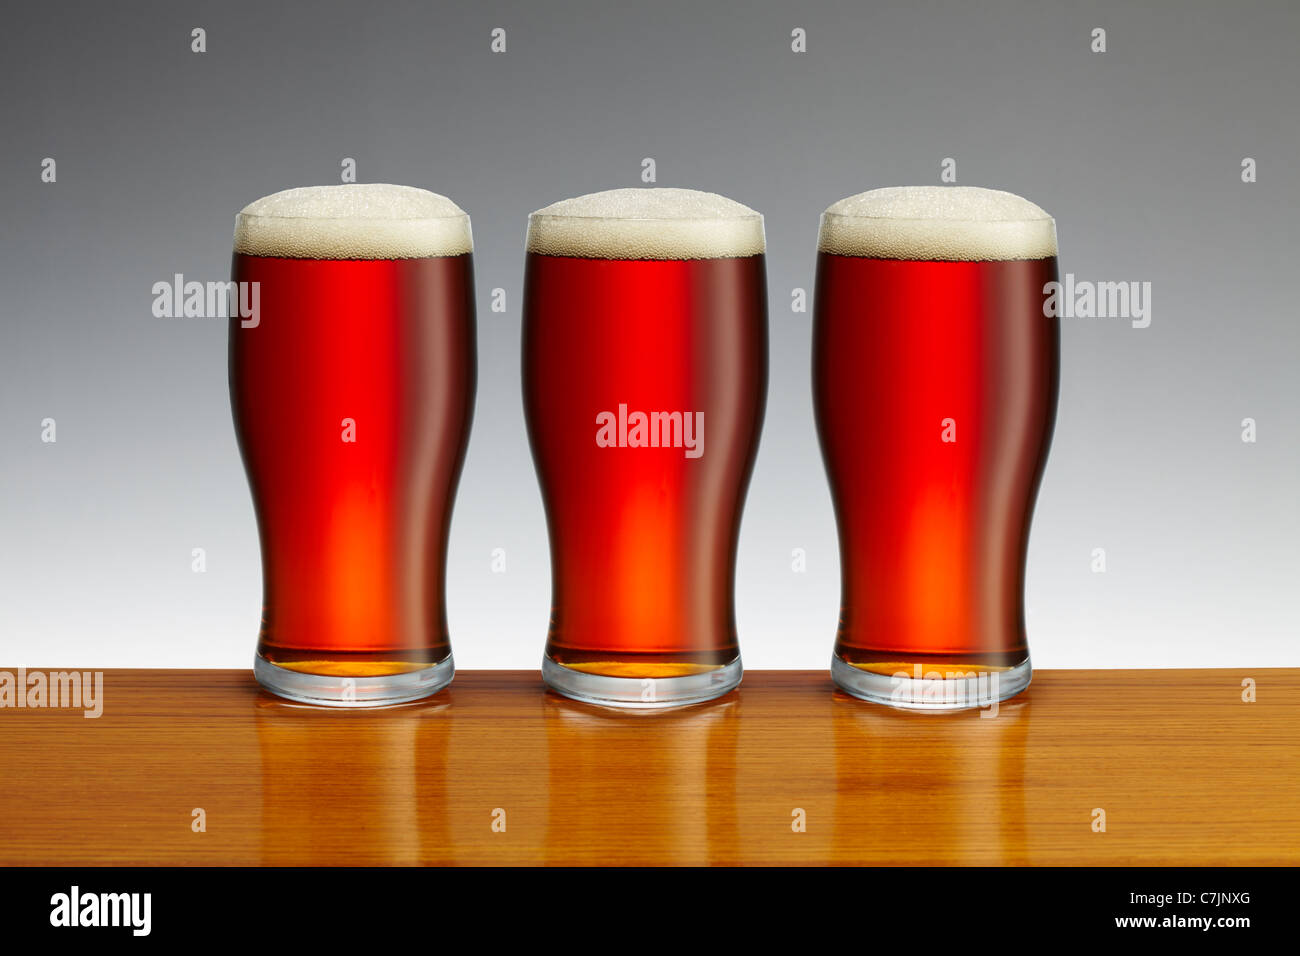 https://c8.alamy.com/comp/C7JNXG/three-pints-of-beer-on-wooden-bar-top-C7JNXG.jpg